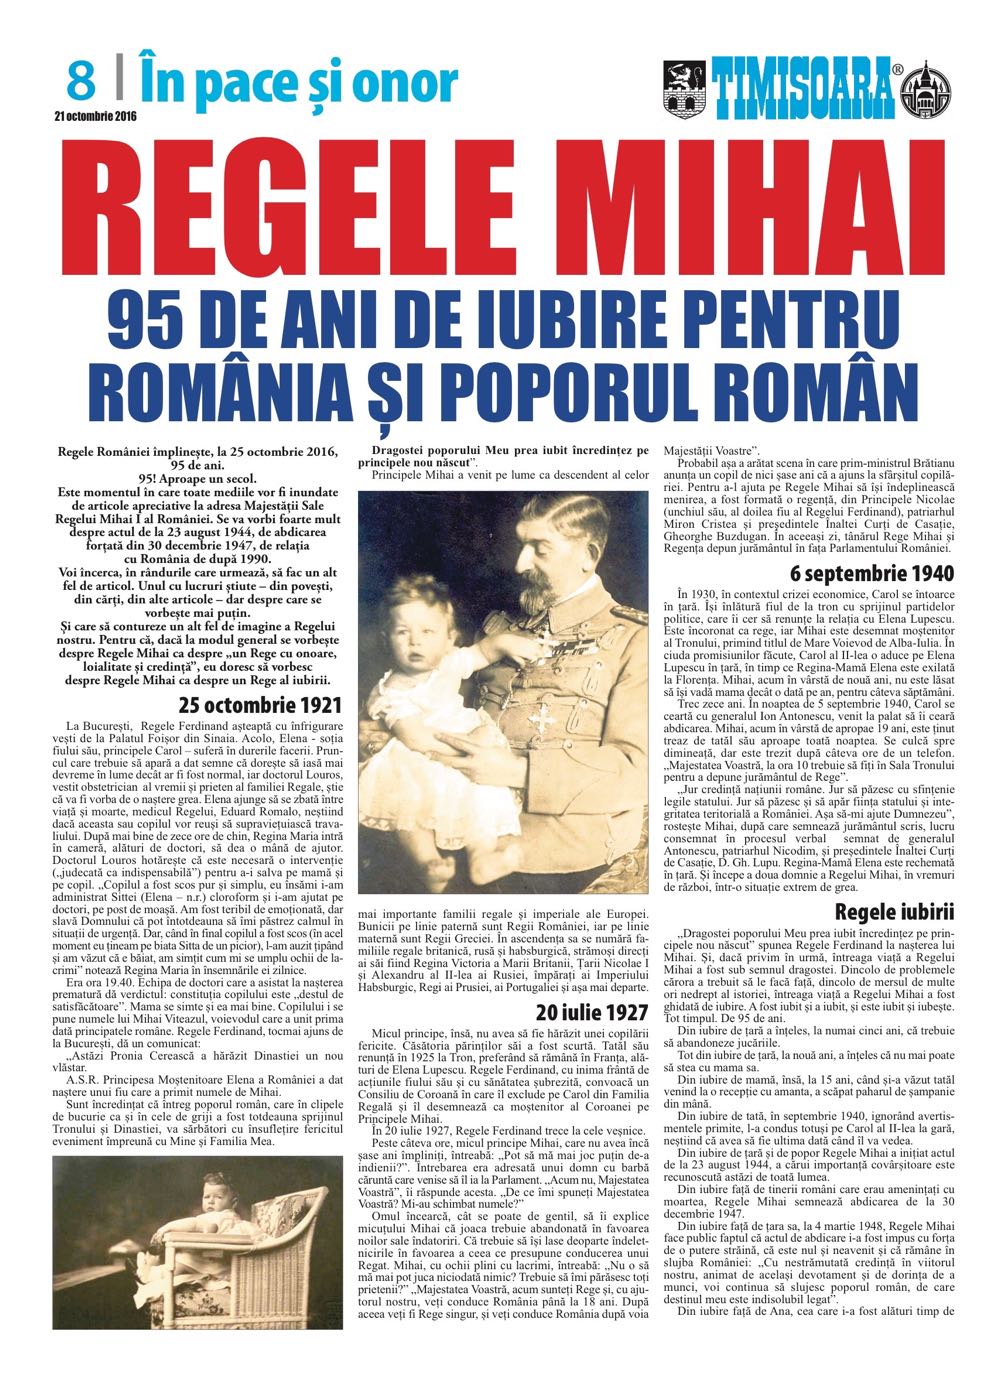 Revista Timisoara, 23 octombrie 2016, articol de Flavius Boncea